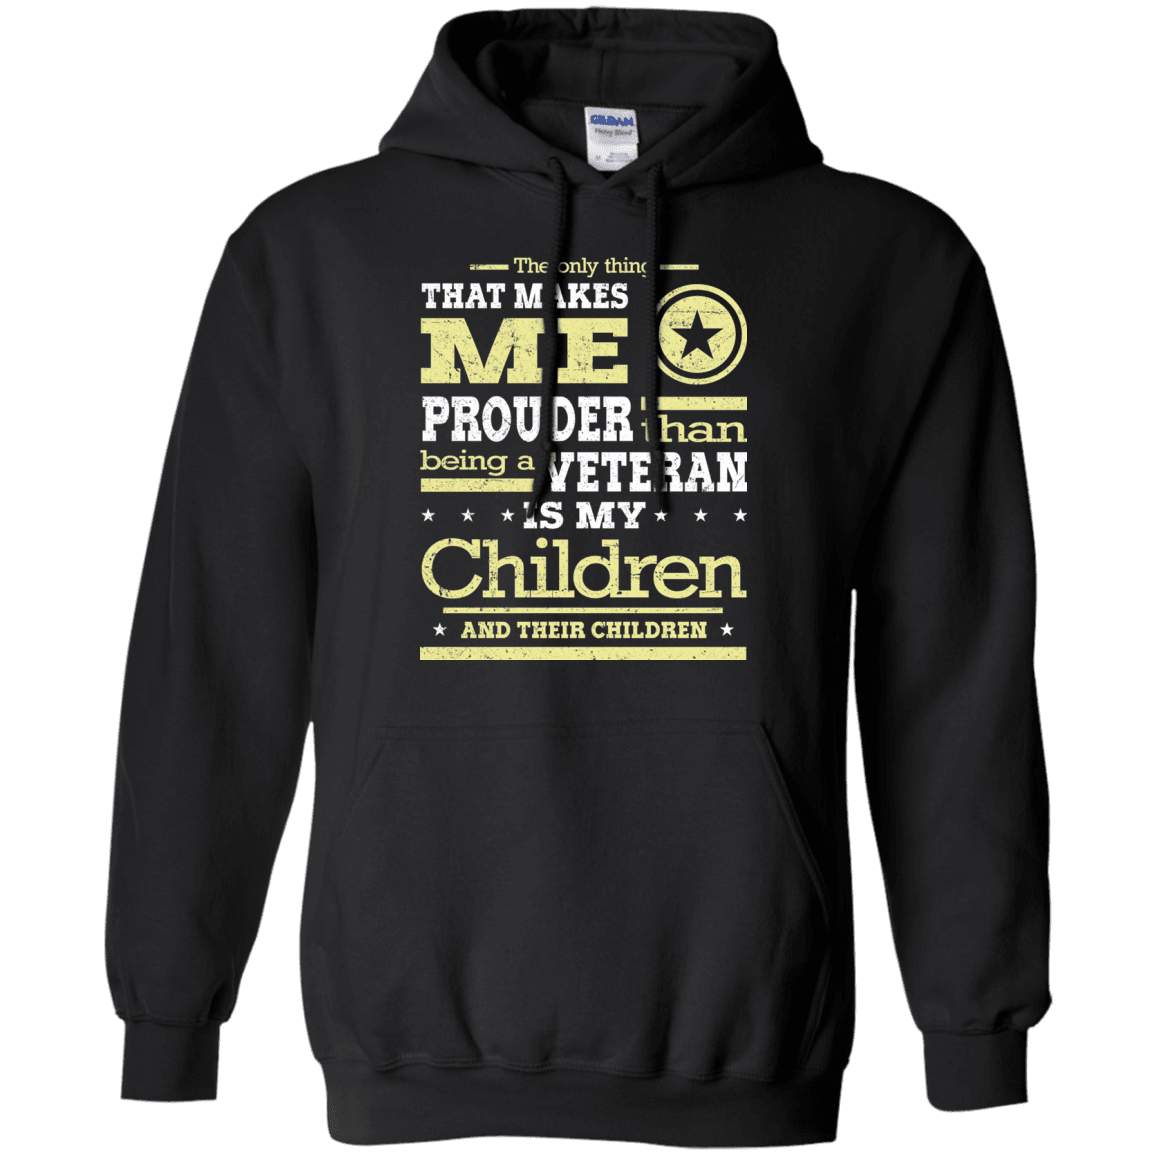 Military T-Shirt "Proud Children's Vetereran Mom" Front-TShirt-General-Veterans Nation